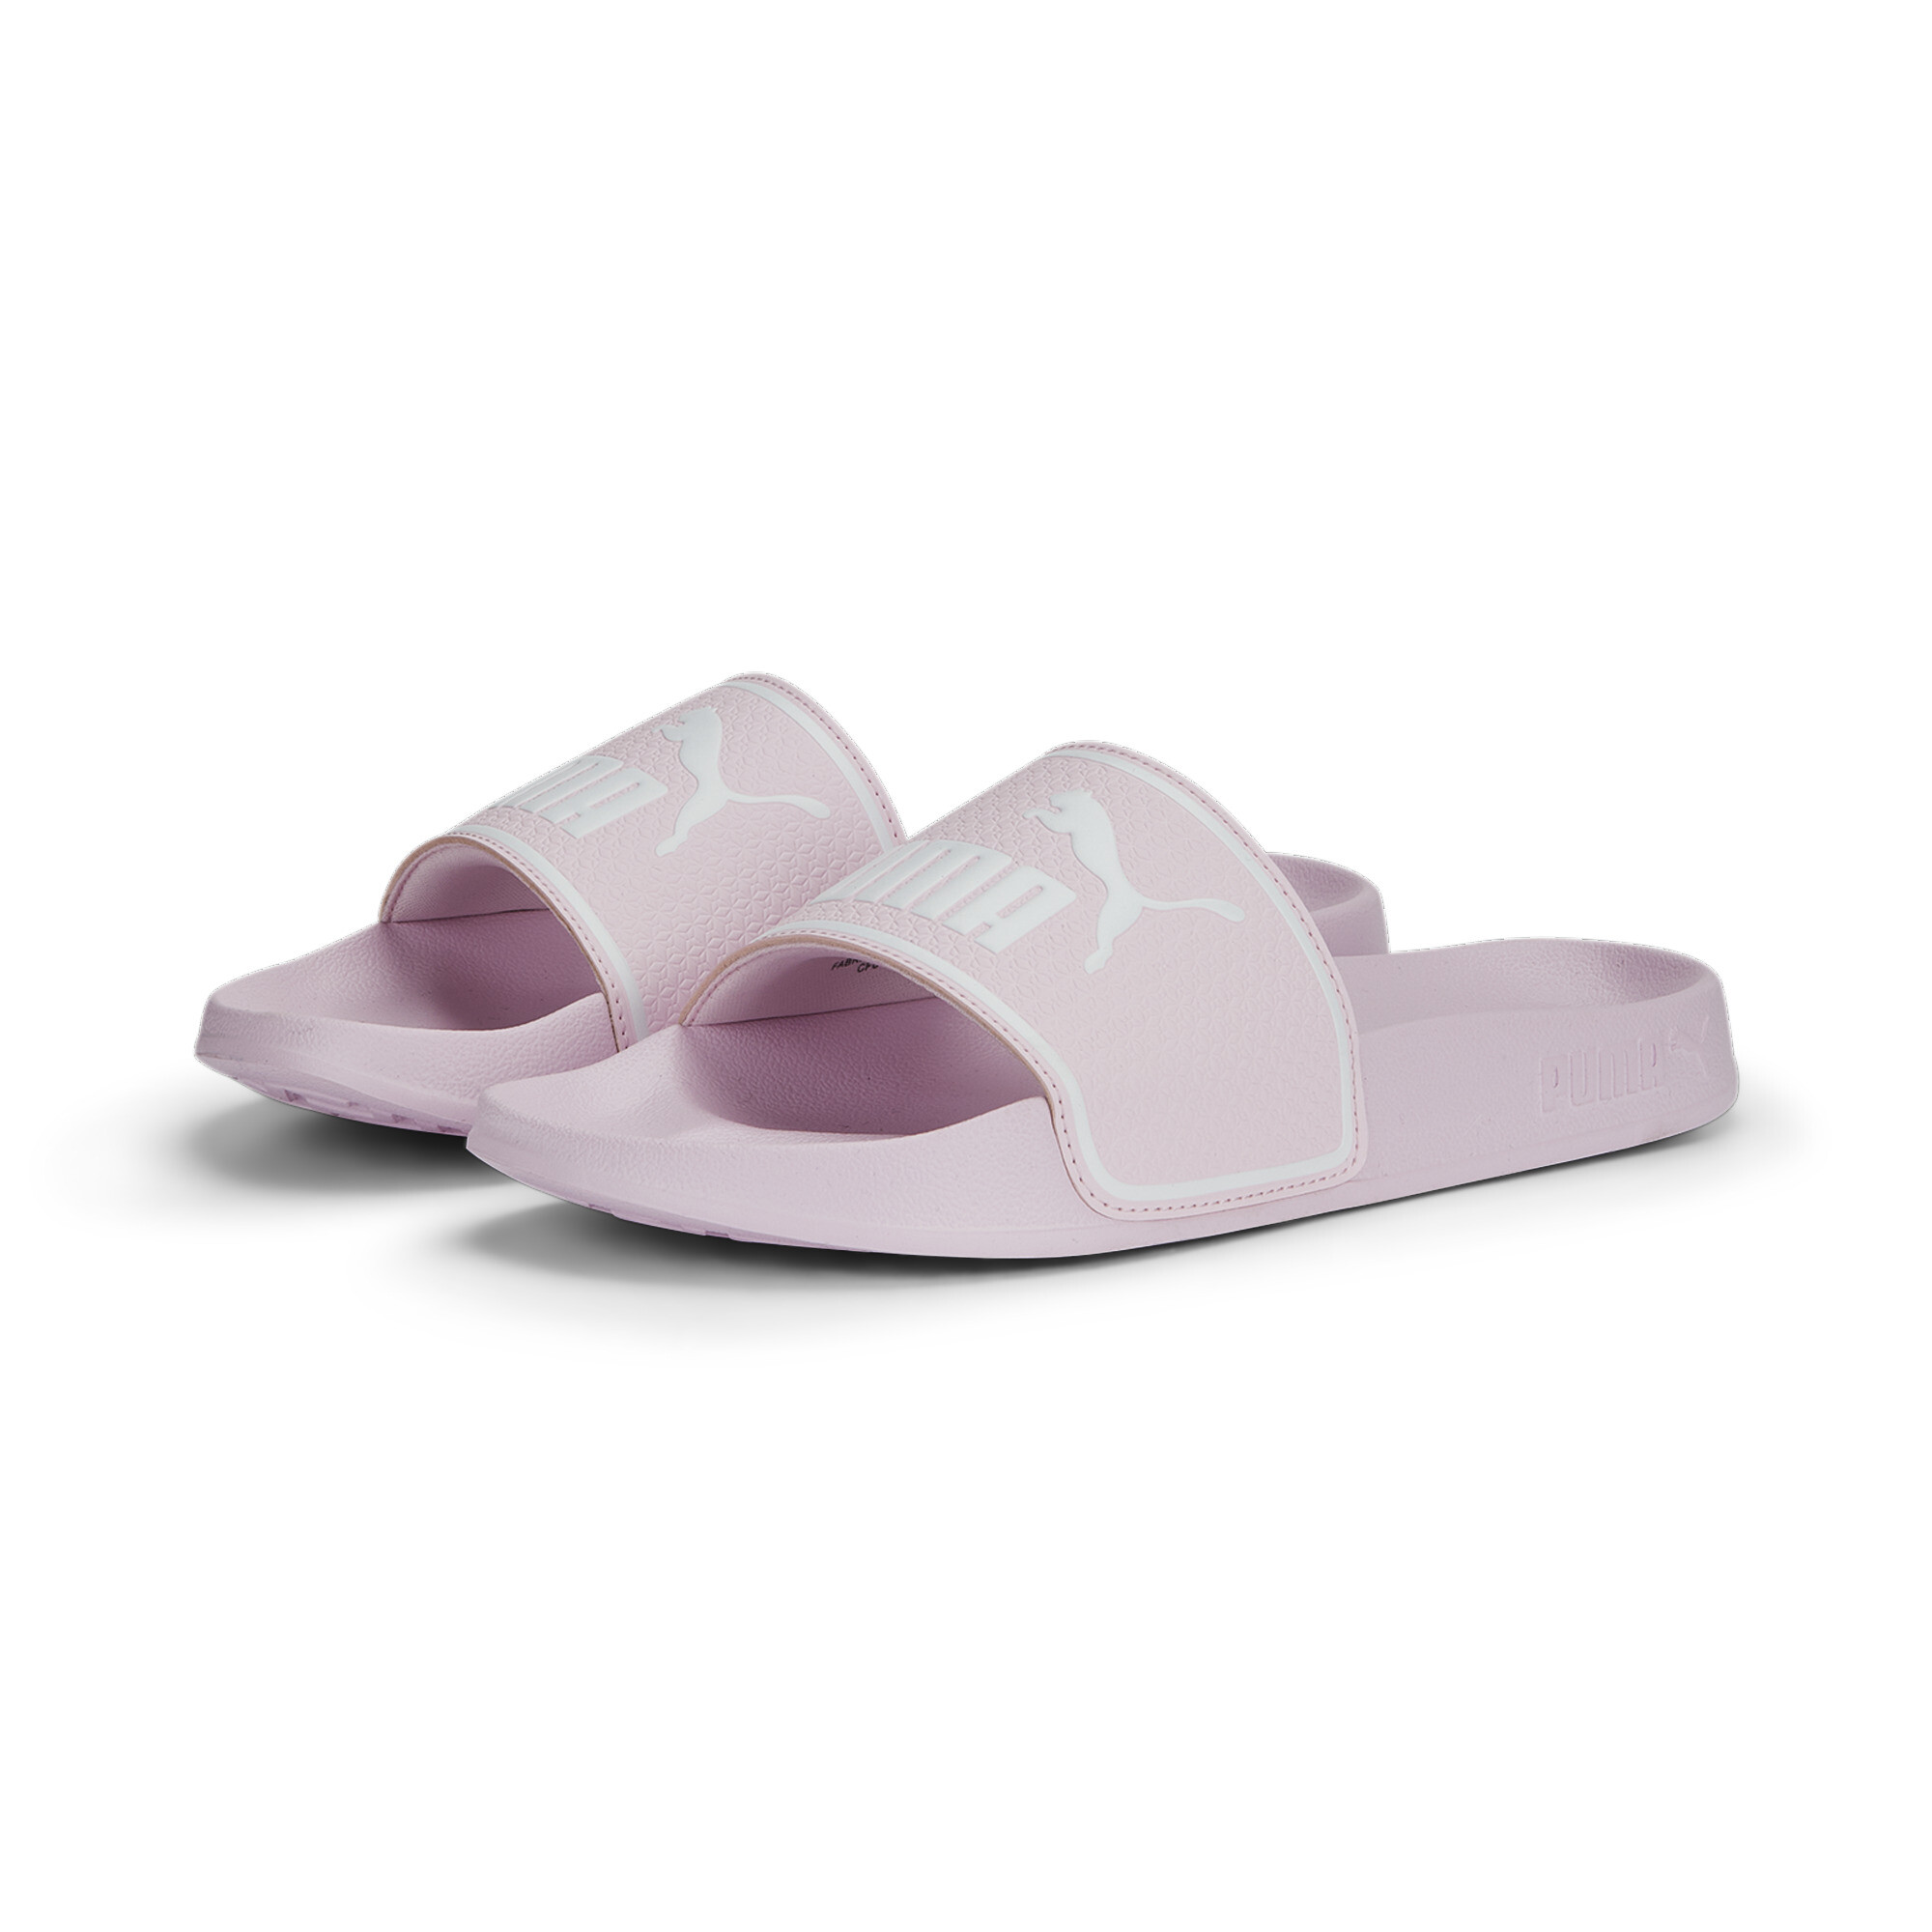 Men's PUMA Leadcat 2.0 Sandals In Pink, Size EU 44.5